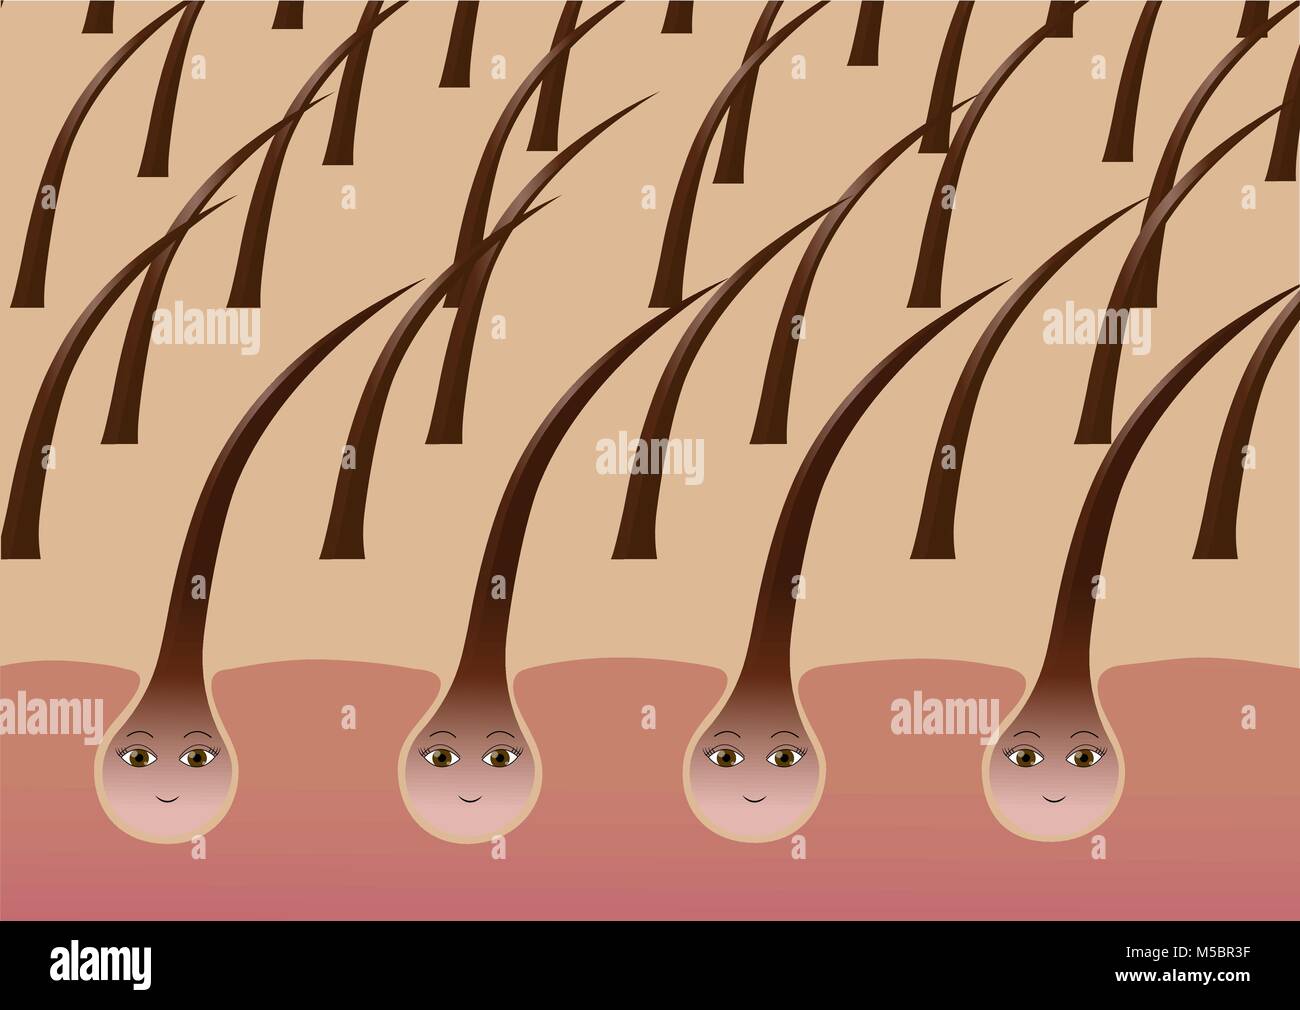 Healthy hair follicles on the scalp, cartoon Stock Vector Image & Art -  Alamy